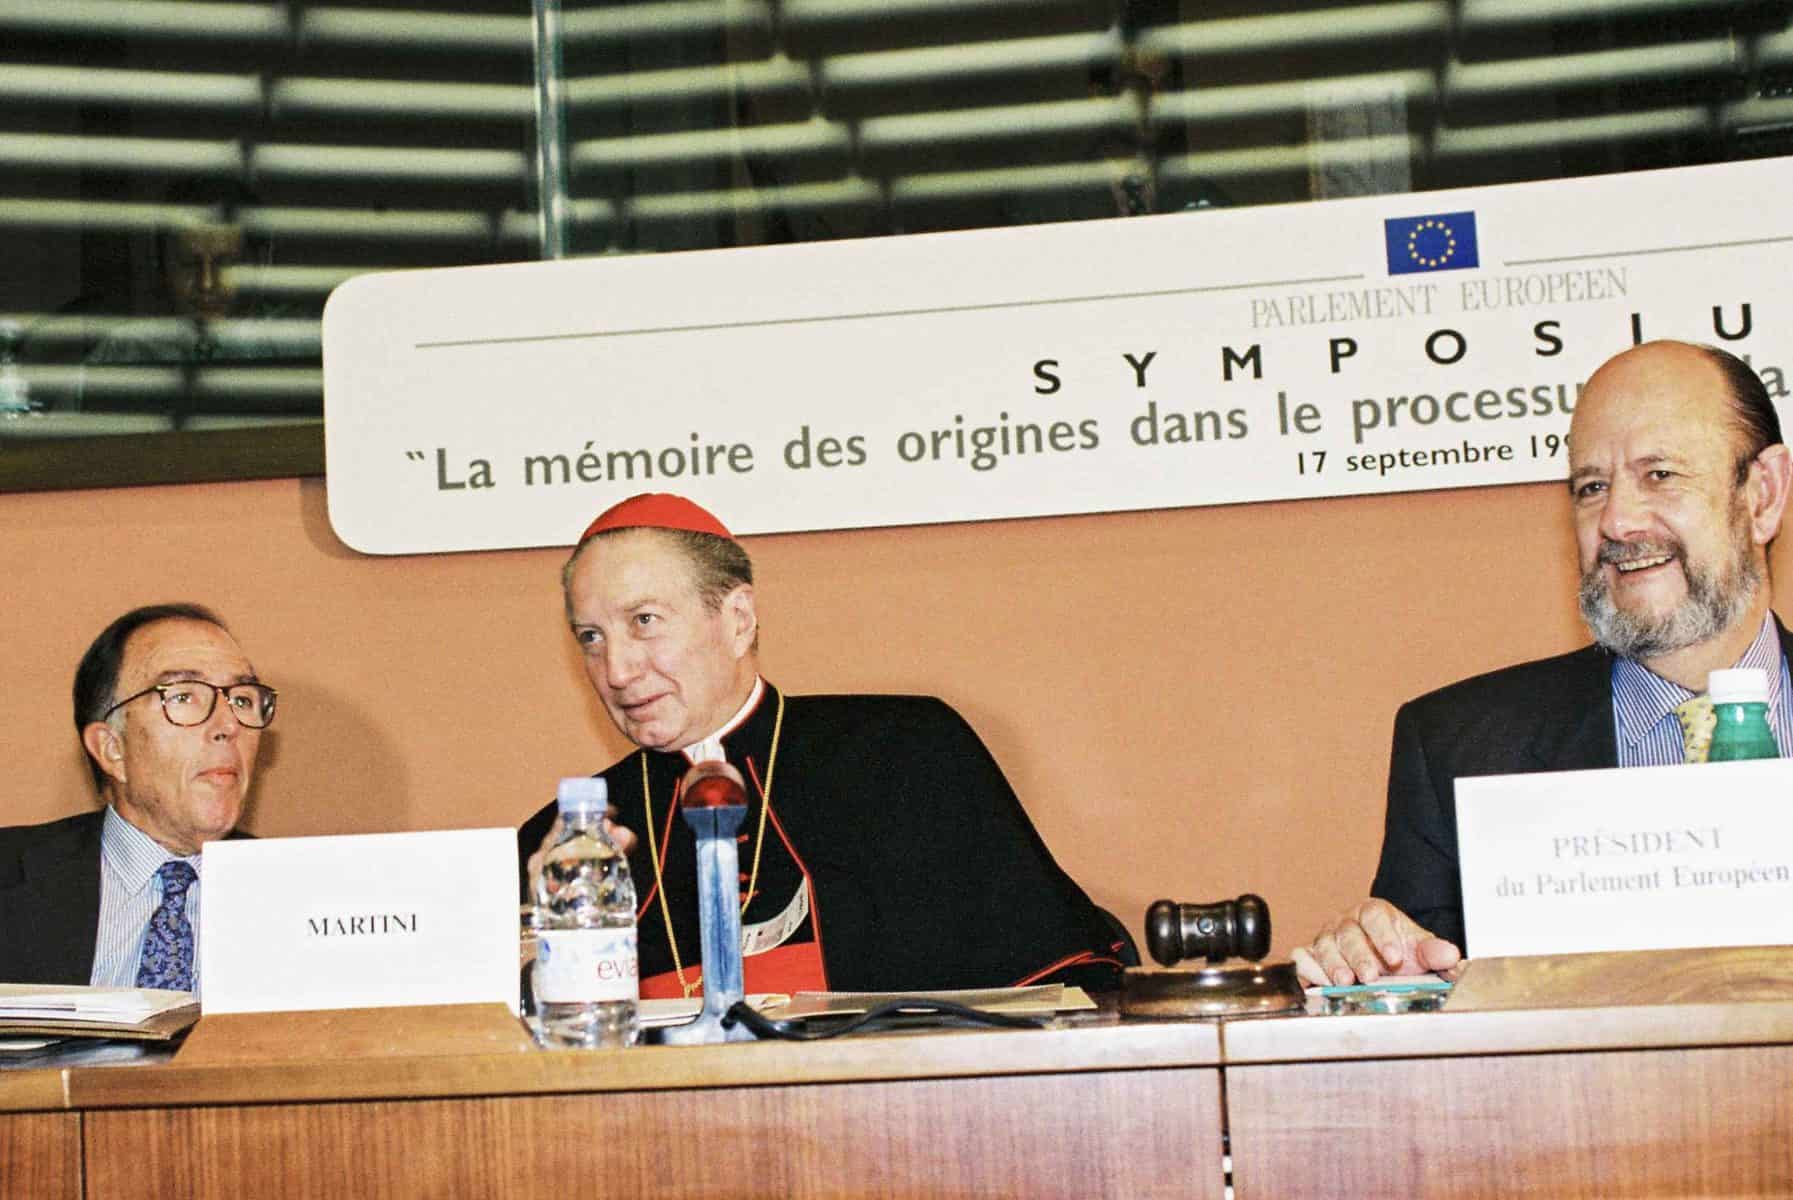 Carlo Maria Martini con il presidente del Parlamento europeo José MaríaGil-Robles y Gil-Delgado al Simposio di Strasburgo nel settembre 1997